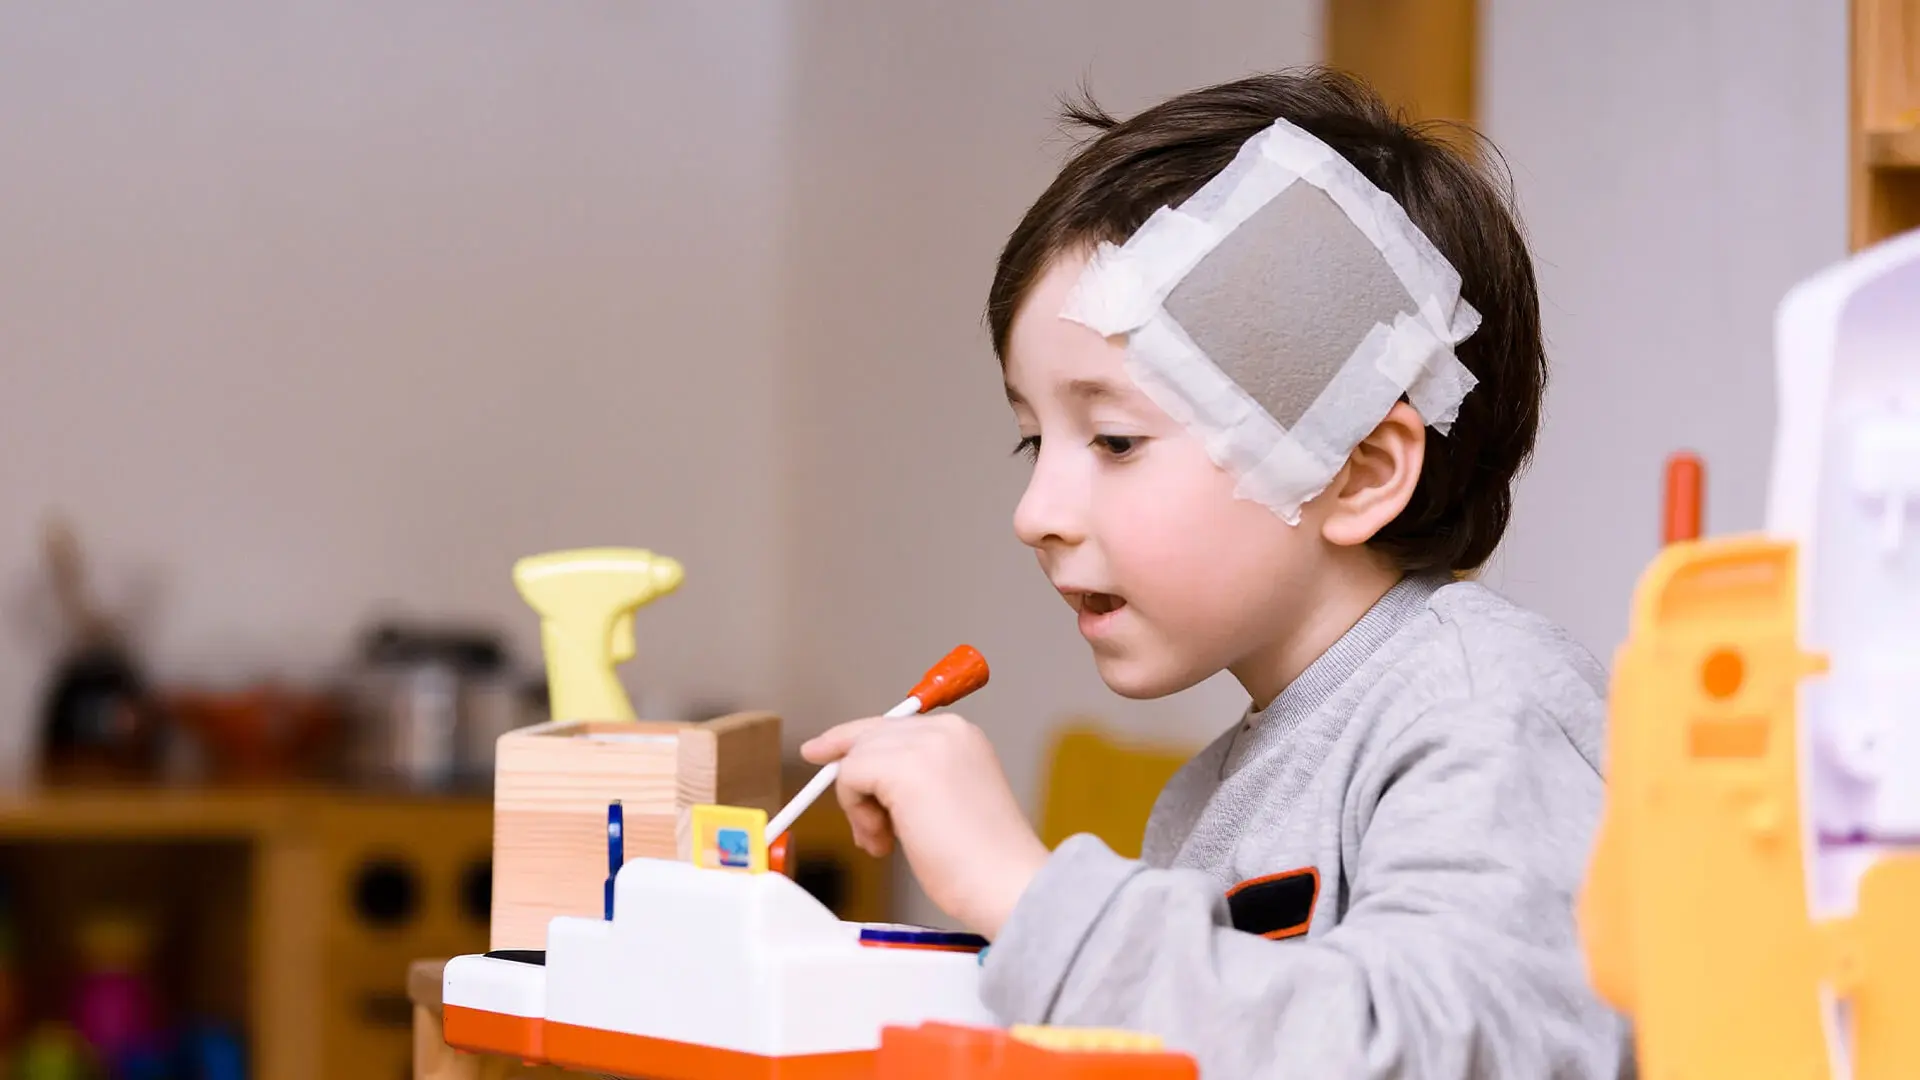 Der damals 5-jährige Giovanni spielt in der Kinderklinik. Er hat ein großes Pflaster am Kopf.